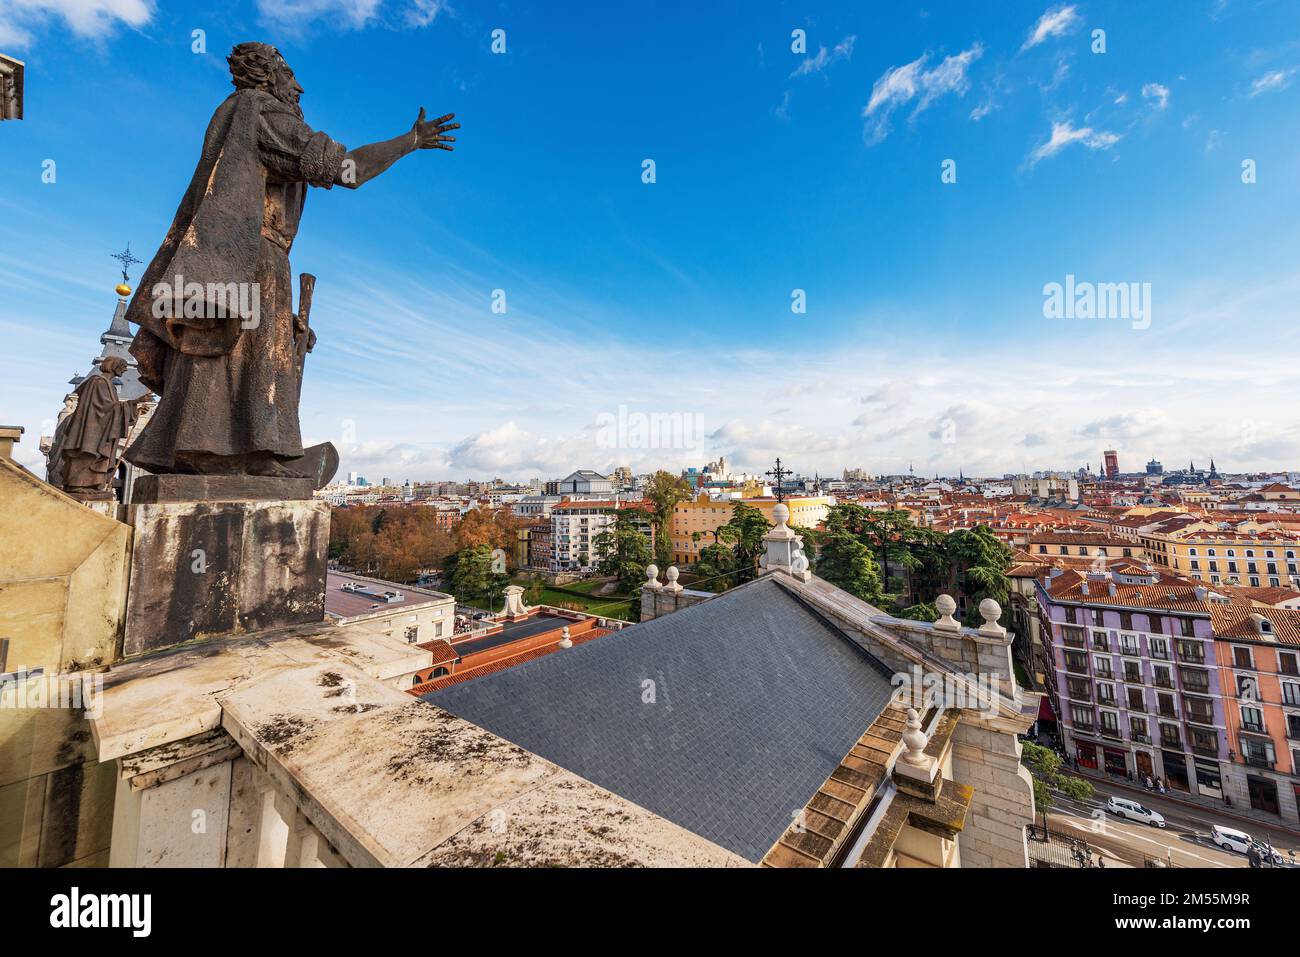 Il paesaggio urbano di Madrid dalla cupola della Cattedrale dell'Almudena in stile neoromanico, neogotico e neoclassico, 1883-1993. Spagna, Europa meridionale. Foto Stock